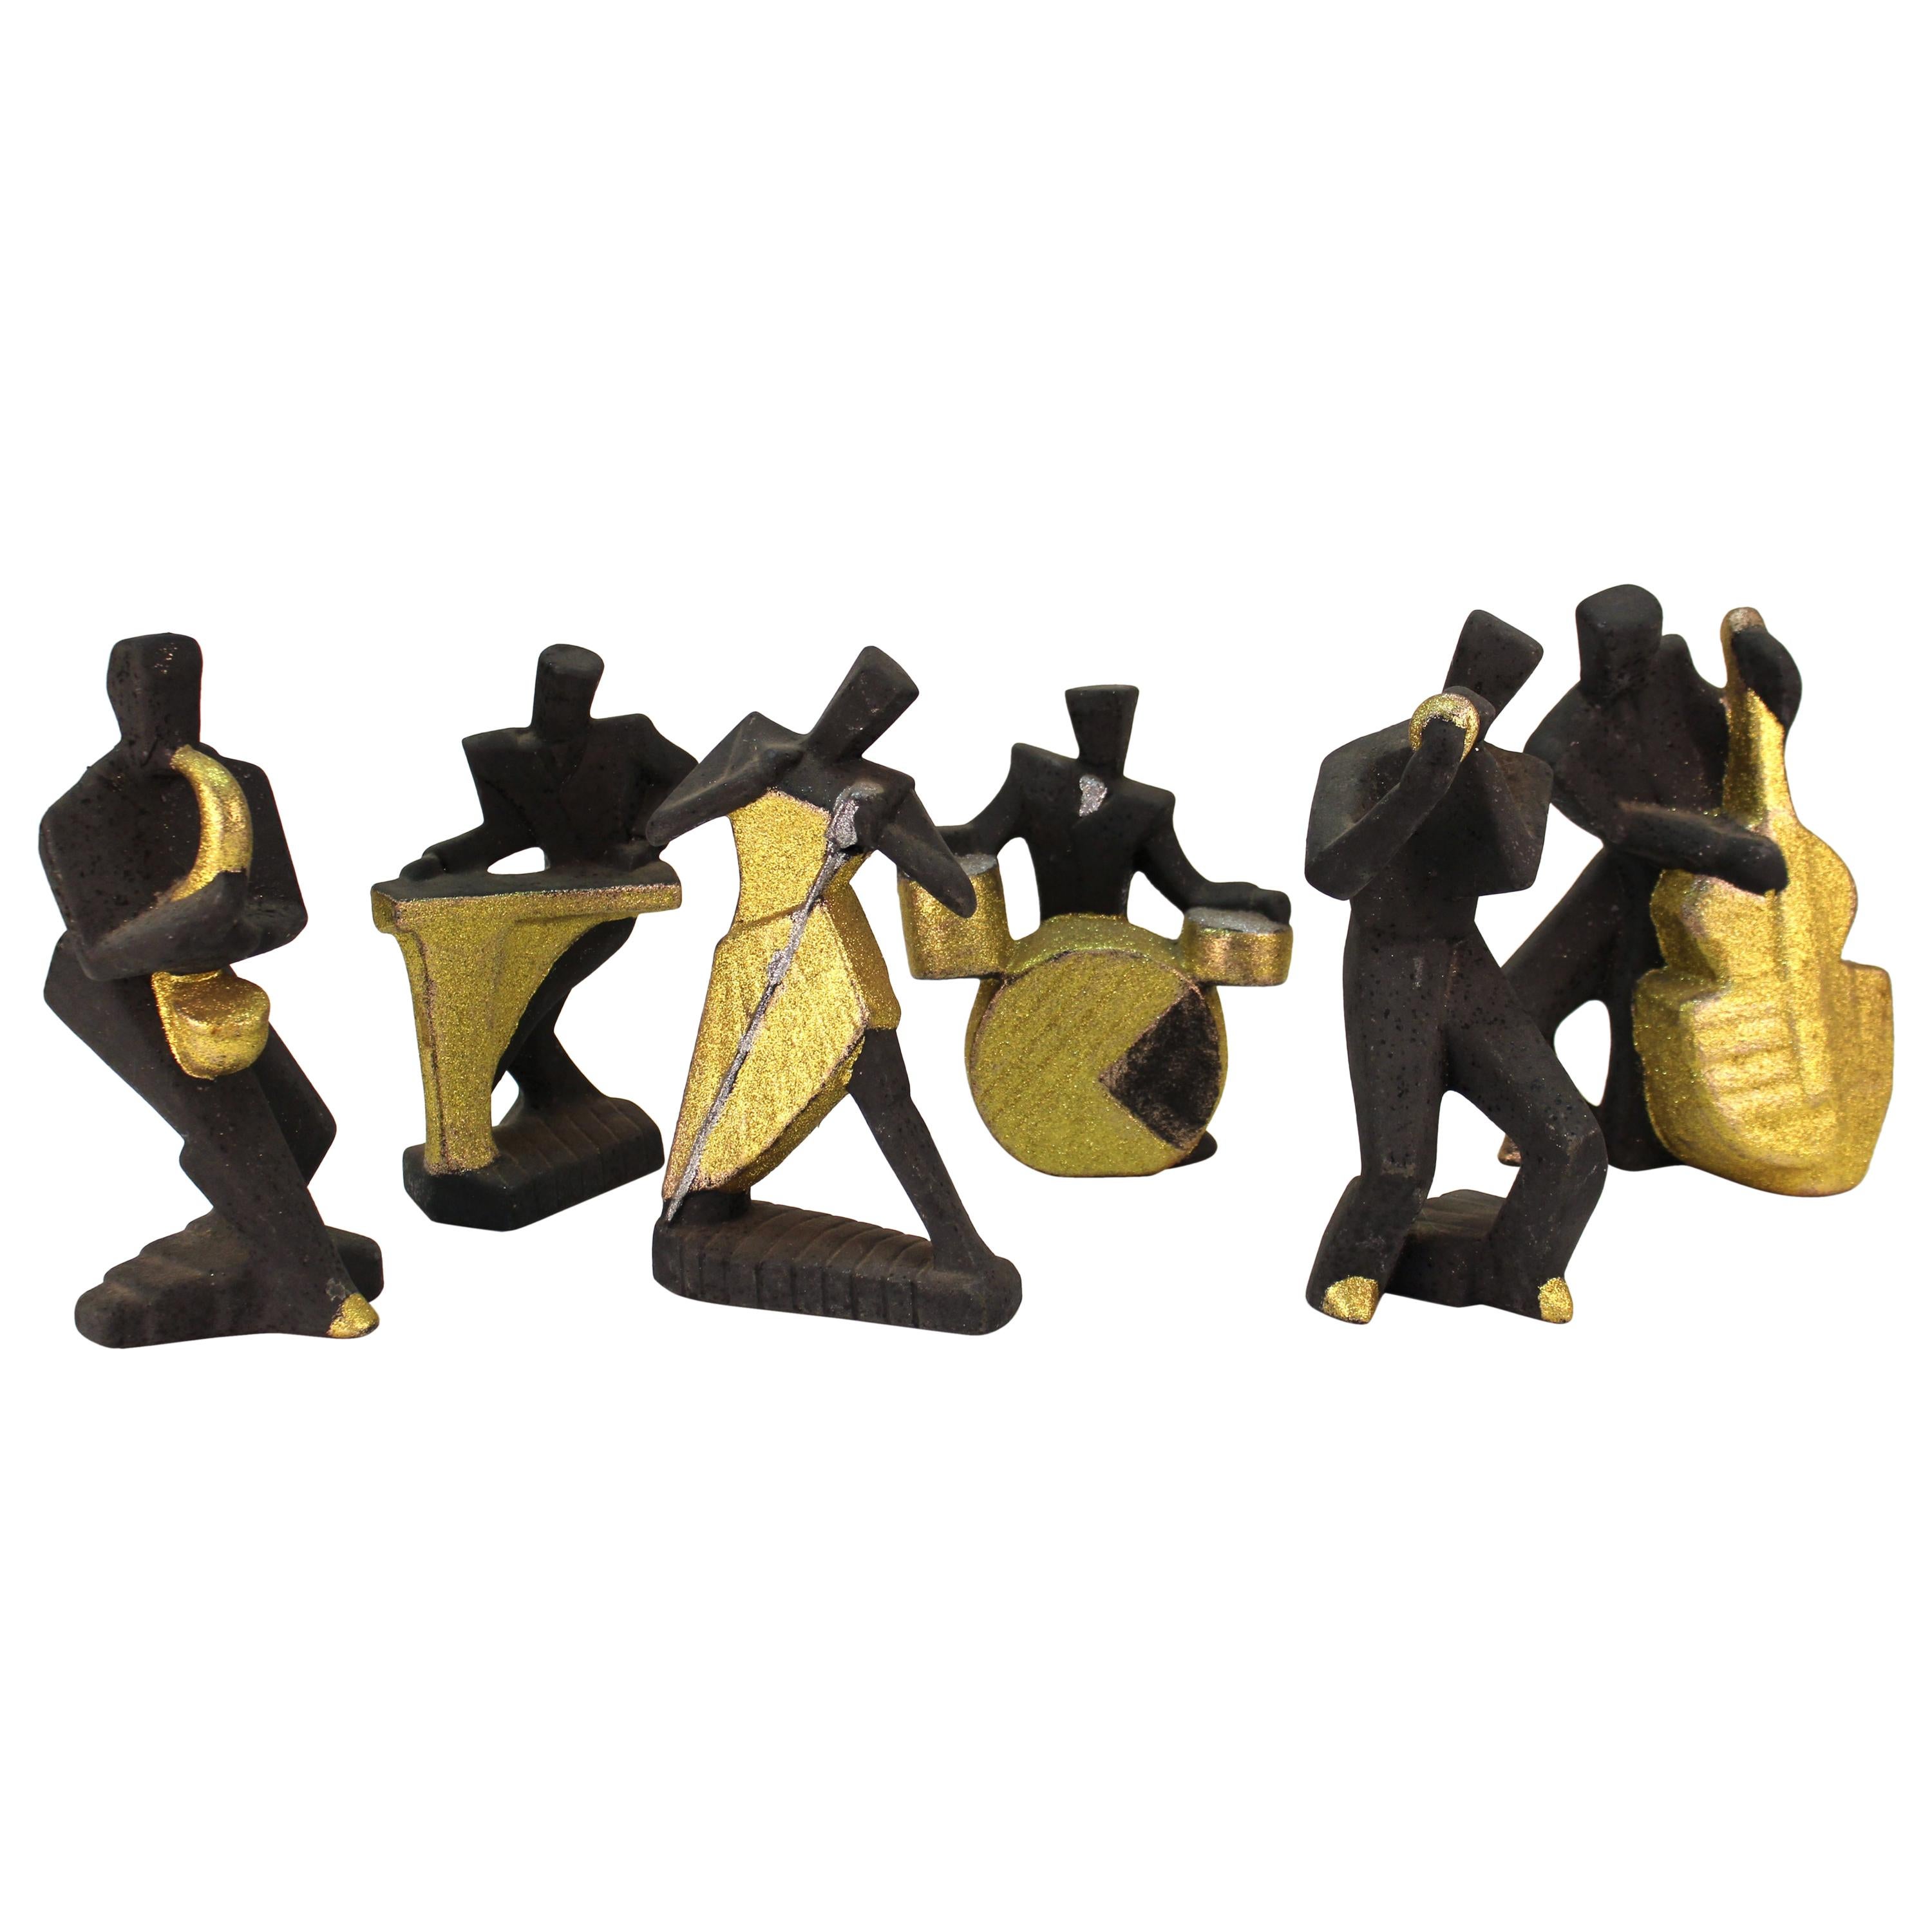 Cubist Style Postmodern Ceramic Jazz Sculptures